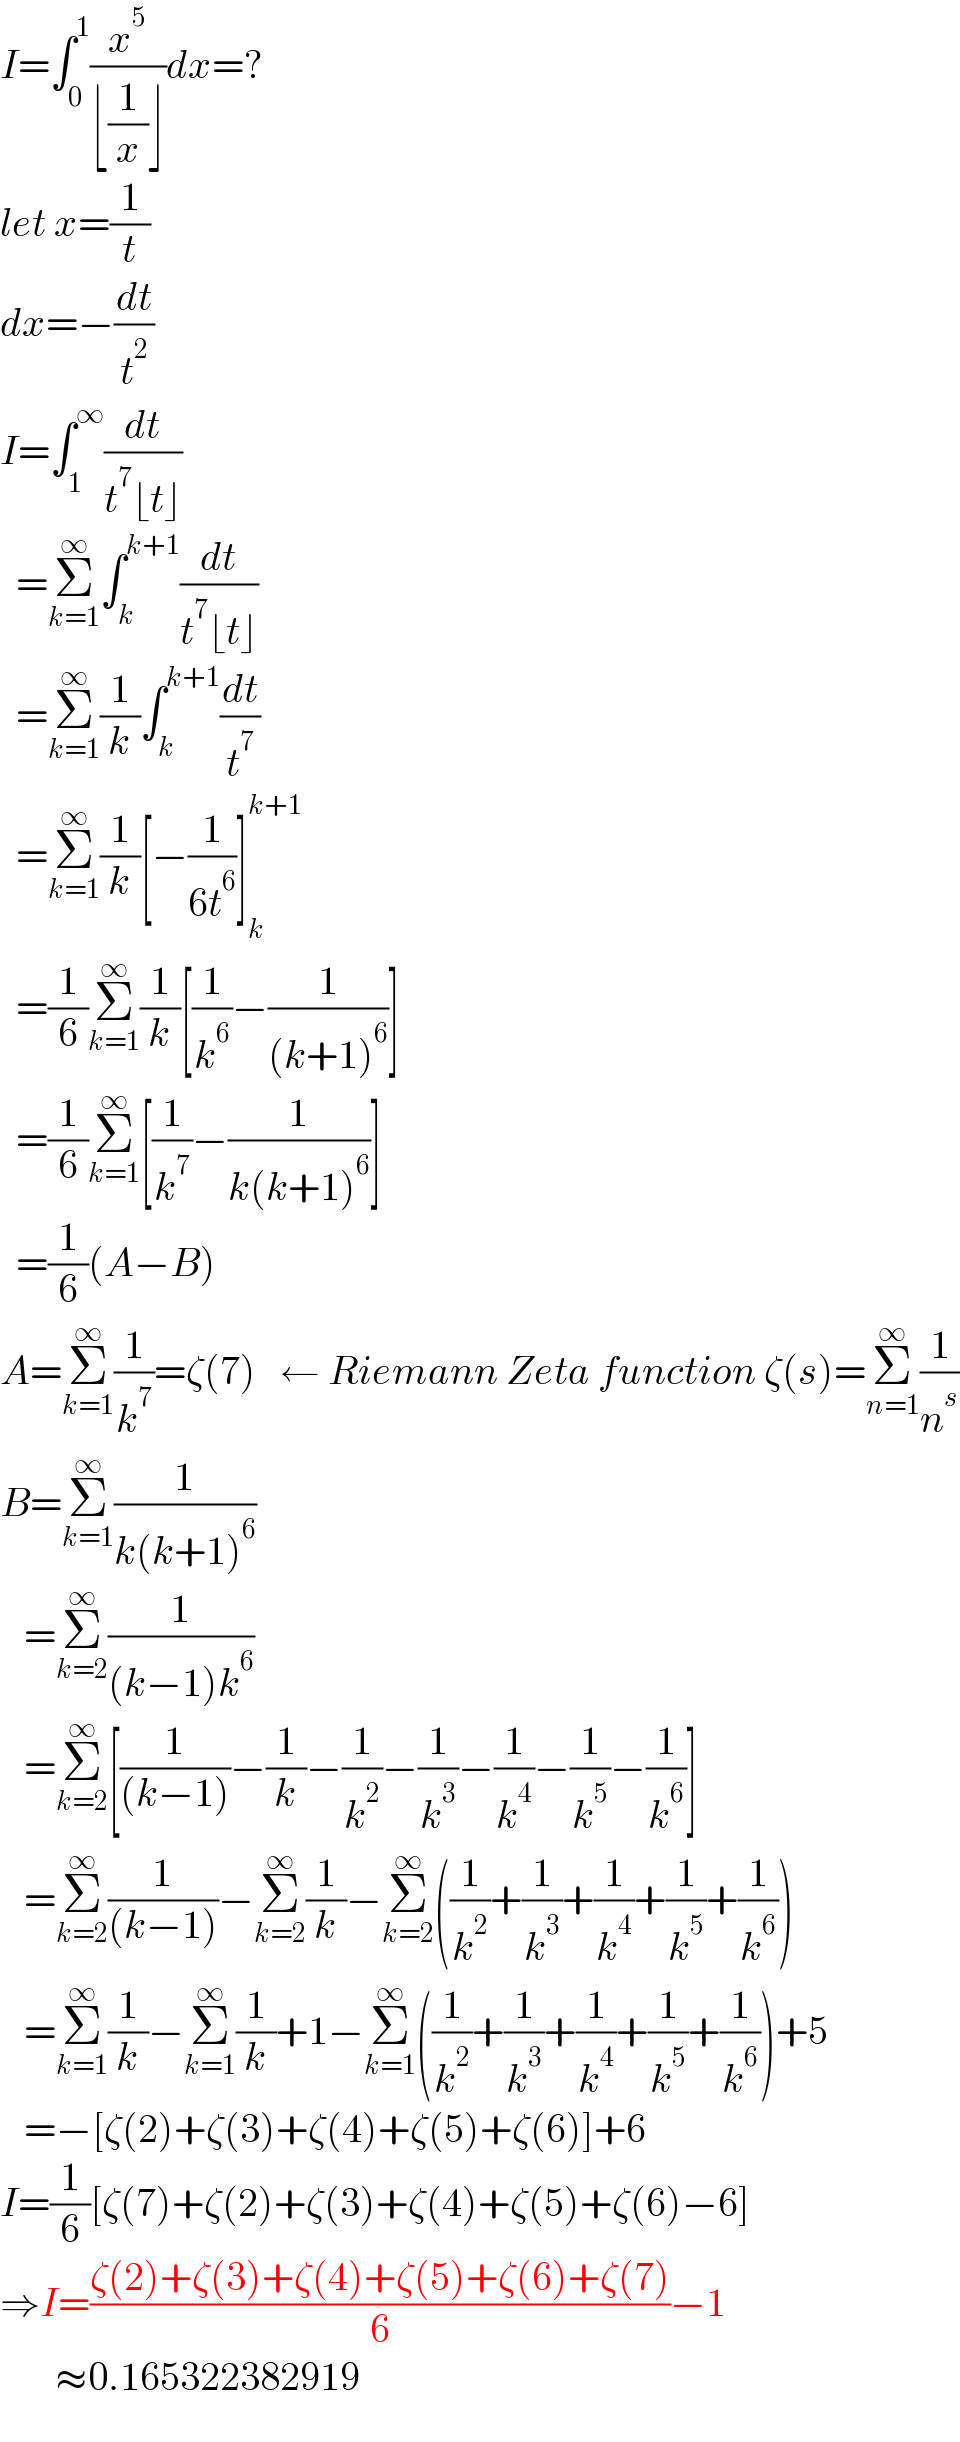 I=∫_0 ^1 (x^5 /(⌊(1/x)⌋))dx=?  let x=(1/t)  dx=−(dt/t^2 )  I=∫_1 ^∞ (dt/(t^7 ⌊t⌋))    =Σ_(k=1) ^∞ ∫_k ^(k+1) (dt/(t^7 ⌊t⌋))    =Σ_(k=1) ^∞ (1/k)∫_k ^(k+1) (dt/t^7 )    =Σ_(k=1) ^∞ (1/k)[−(1/(6t^6 ))]_k ^(k+1)     =(1/6)Σ_(k=1) ^∞ (1/k)[(1/k^6 )−(1/((k+1)^6 ))]    =(1/6)Σ_(k=1) ^∞ [(1/k^7 )−(1/(k(k+1)^6 ))]    =(1/6)(A−B)  A=Σ_(k=1) ^∞ (1/k^7 )=ζ(7)   ← Riemann Zeta function ζ(s)=Σ_(n=1) ^∞ (1/n^s )  B=Σ_(k=1) ^∞ (1/(k(k+1)^6 ))     =Σ_(k=2) ^∞ (1/((k−1)k^6 ))     =Σ_(k=2) ^∞ [(1/((k−1)))−(1/k)−(1/k^2 )−(1/k^3 )−(1/k^4 )−(1/k^5 )−(1/k^6 )]     =Σ_(k=2) ^∞ (1/((k−1)))−Σ_(k=2) ^∞ (1/k)−Σ_(k=2) ^∞ ((1/k^2 )+(1/k^3 )+(1/k^4 )+(1/k^5 )+(1/k^6 ))     =Σ_(k=1) ^∞ (1/k)−Σ_(k=1) ^∞ (1/k)+1−Σ_(k=1) ^∞ ((1/k^2 )+(1/k^3 )+(1/k^4 )+(1/k^5 )+(1/k^6 ))+5     =−[ζ(2)+ζ(3)+ζ(4)+ζ(5)+ζ(6)]+6  I=(1/6)[ζ(7)+ζ(2)+ζ(3)+ζ(4)+ζ(5)+ζ(6)−6]  ⇒I=((ζ(2)+ζ(3)+ζ(4)+ζ(5)+ζ(6)+ζ(7))/6)−1         ≈0.165322382919  